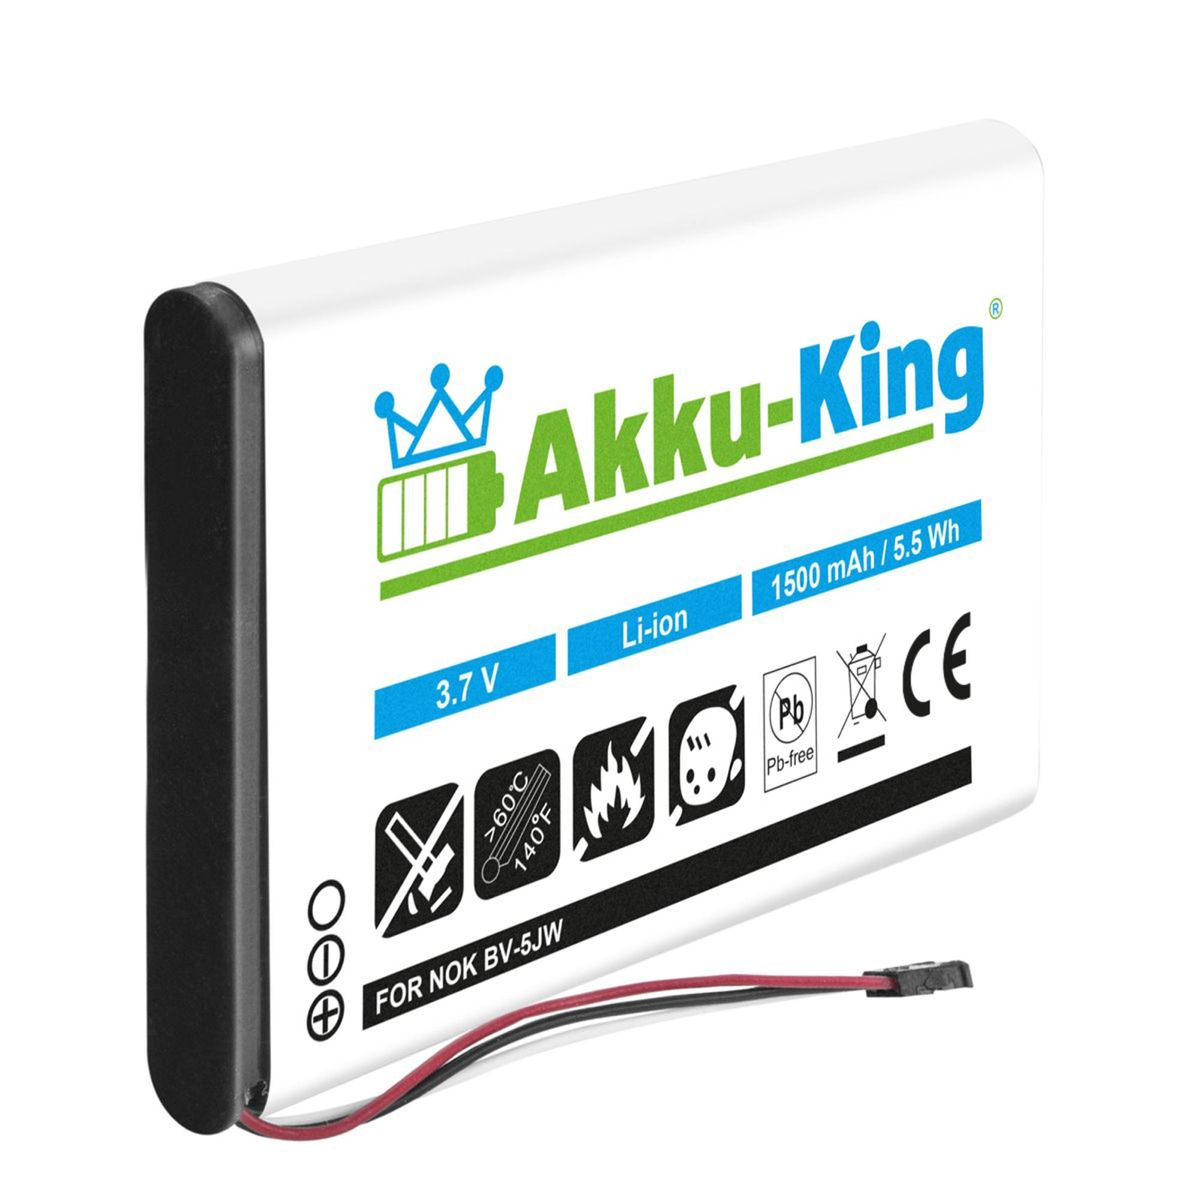 AKKU-KING Akku kompatibel mit Nokia Li-Ion 3.8 1500mAh Handy-Akku, BV-5JW Volt